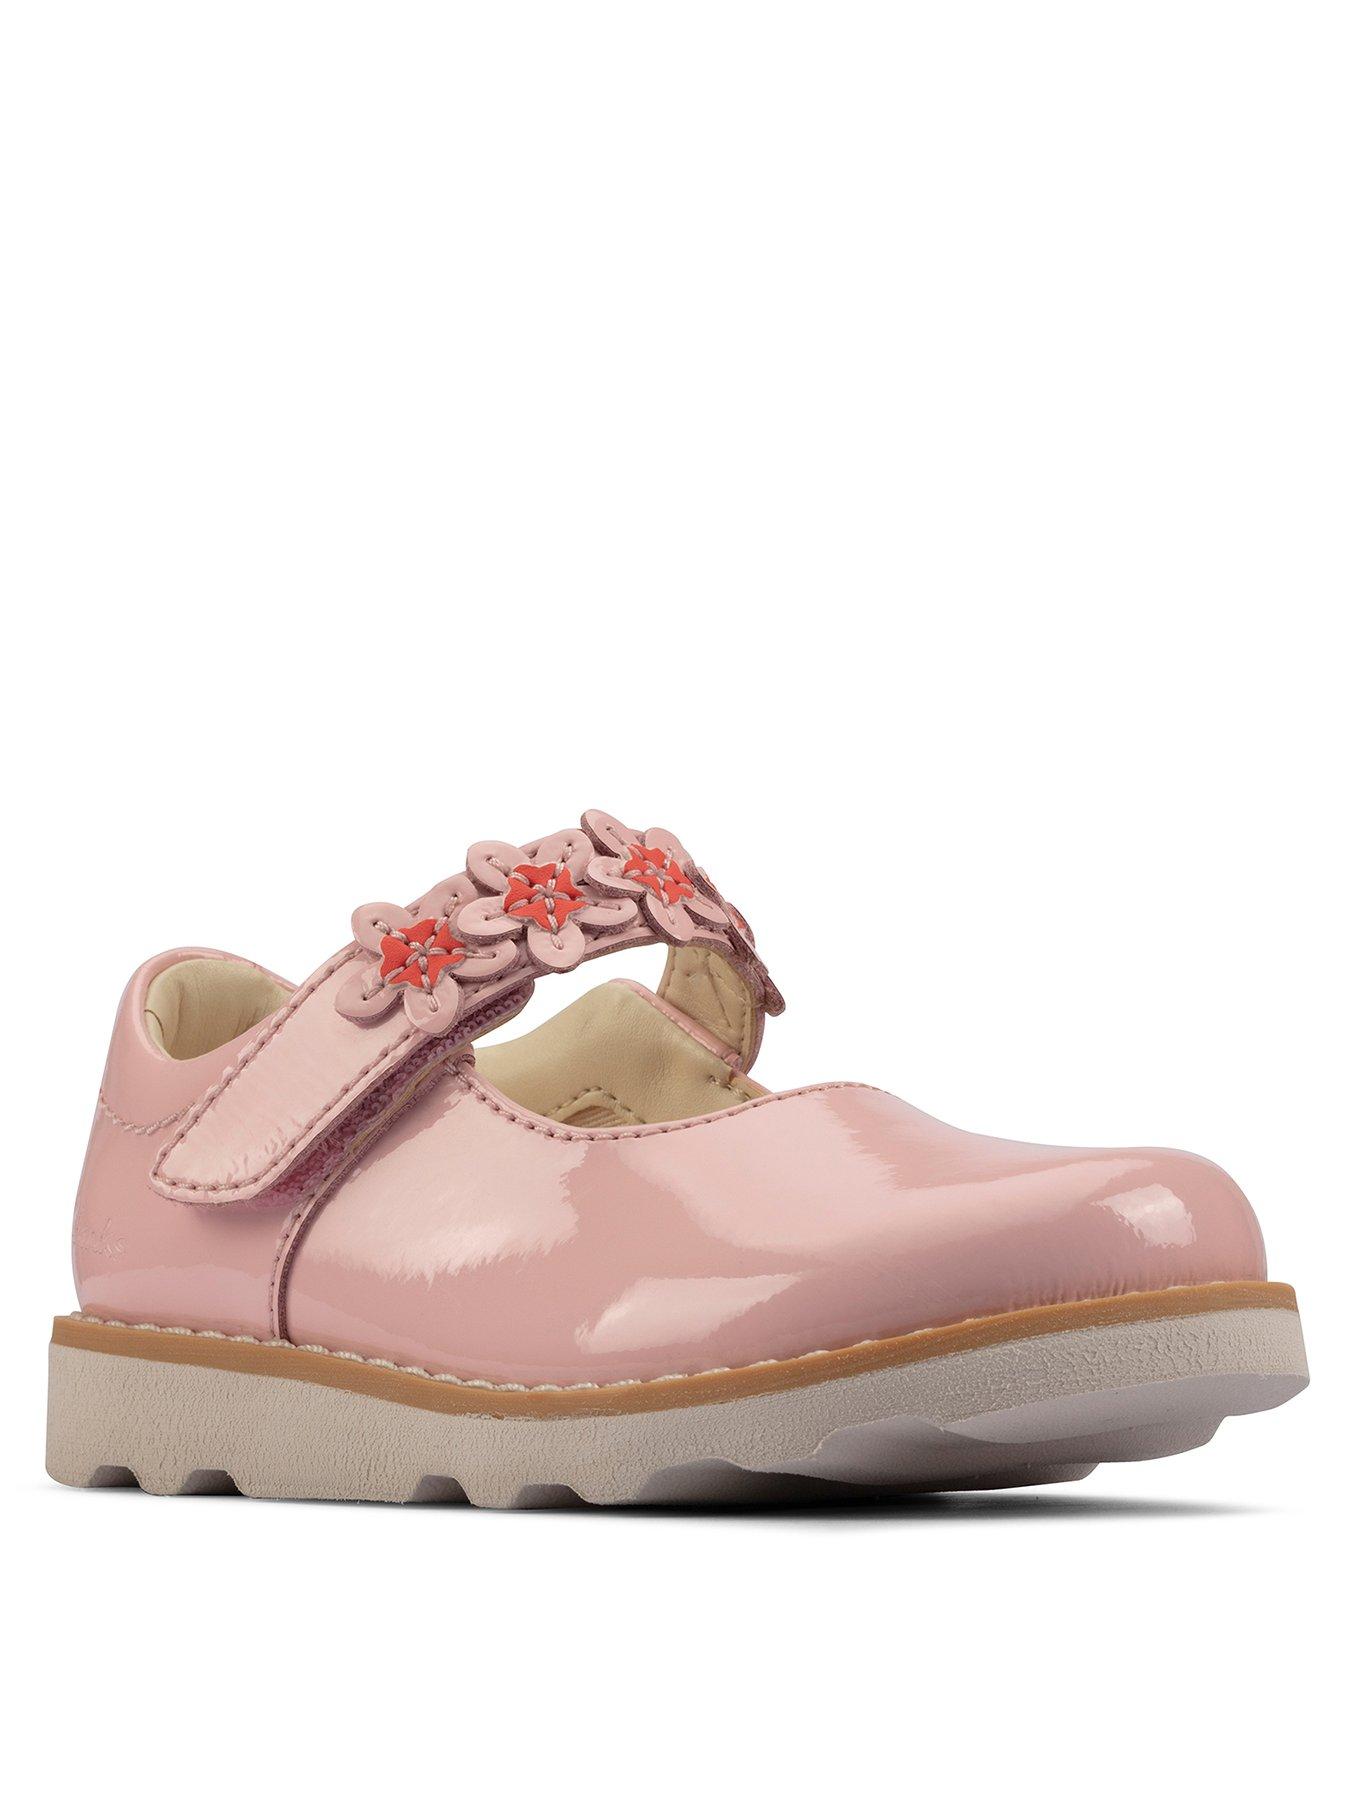 Kids Crown Petal Toddler Shoe - Light Pink